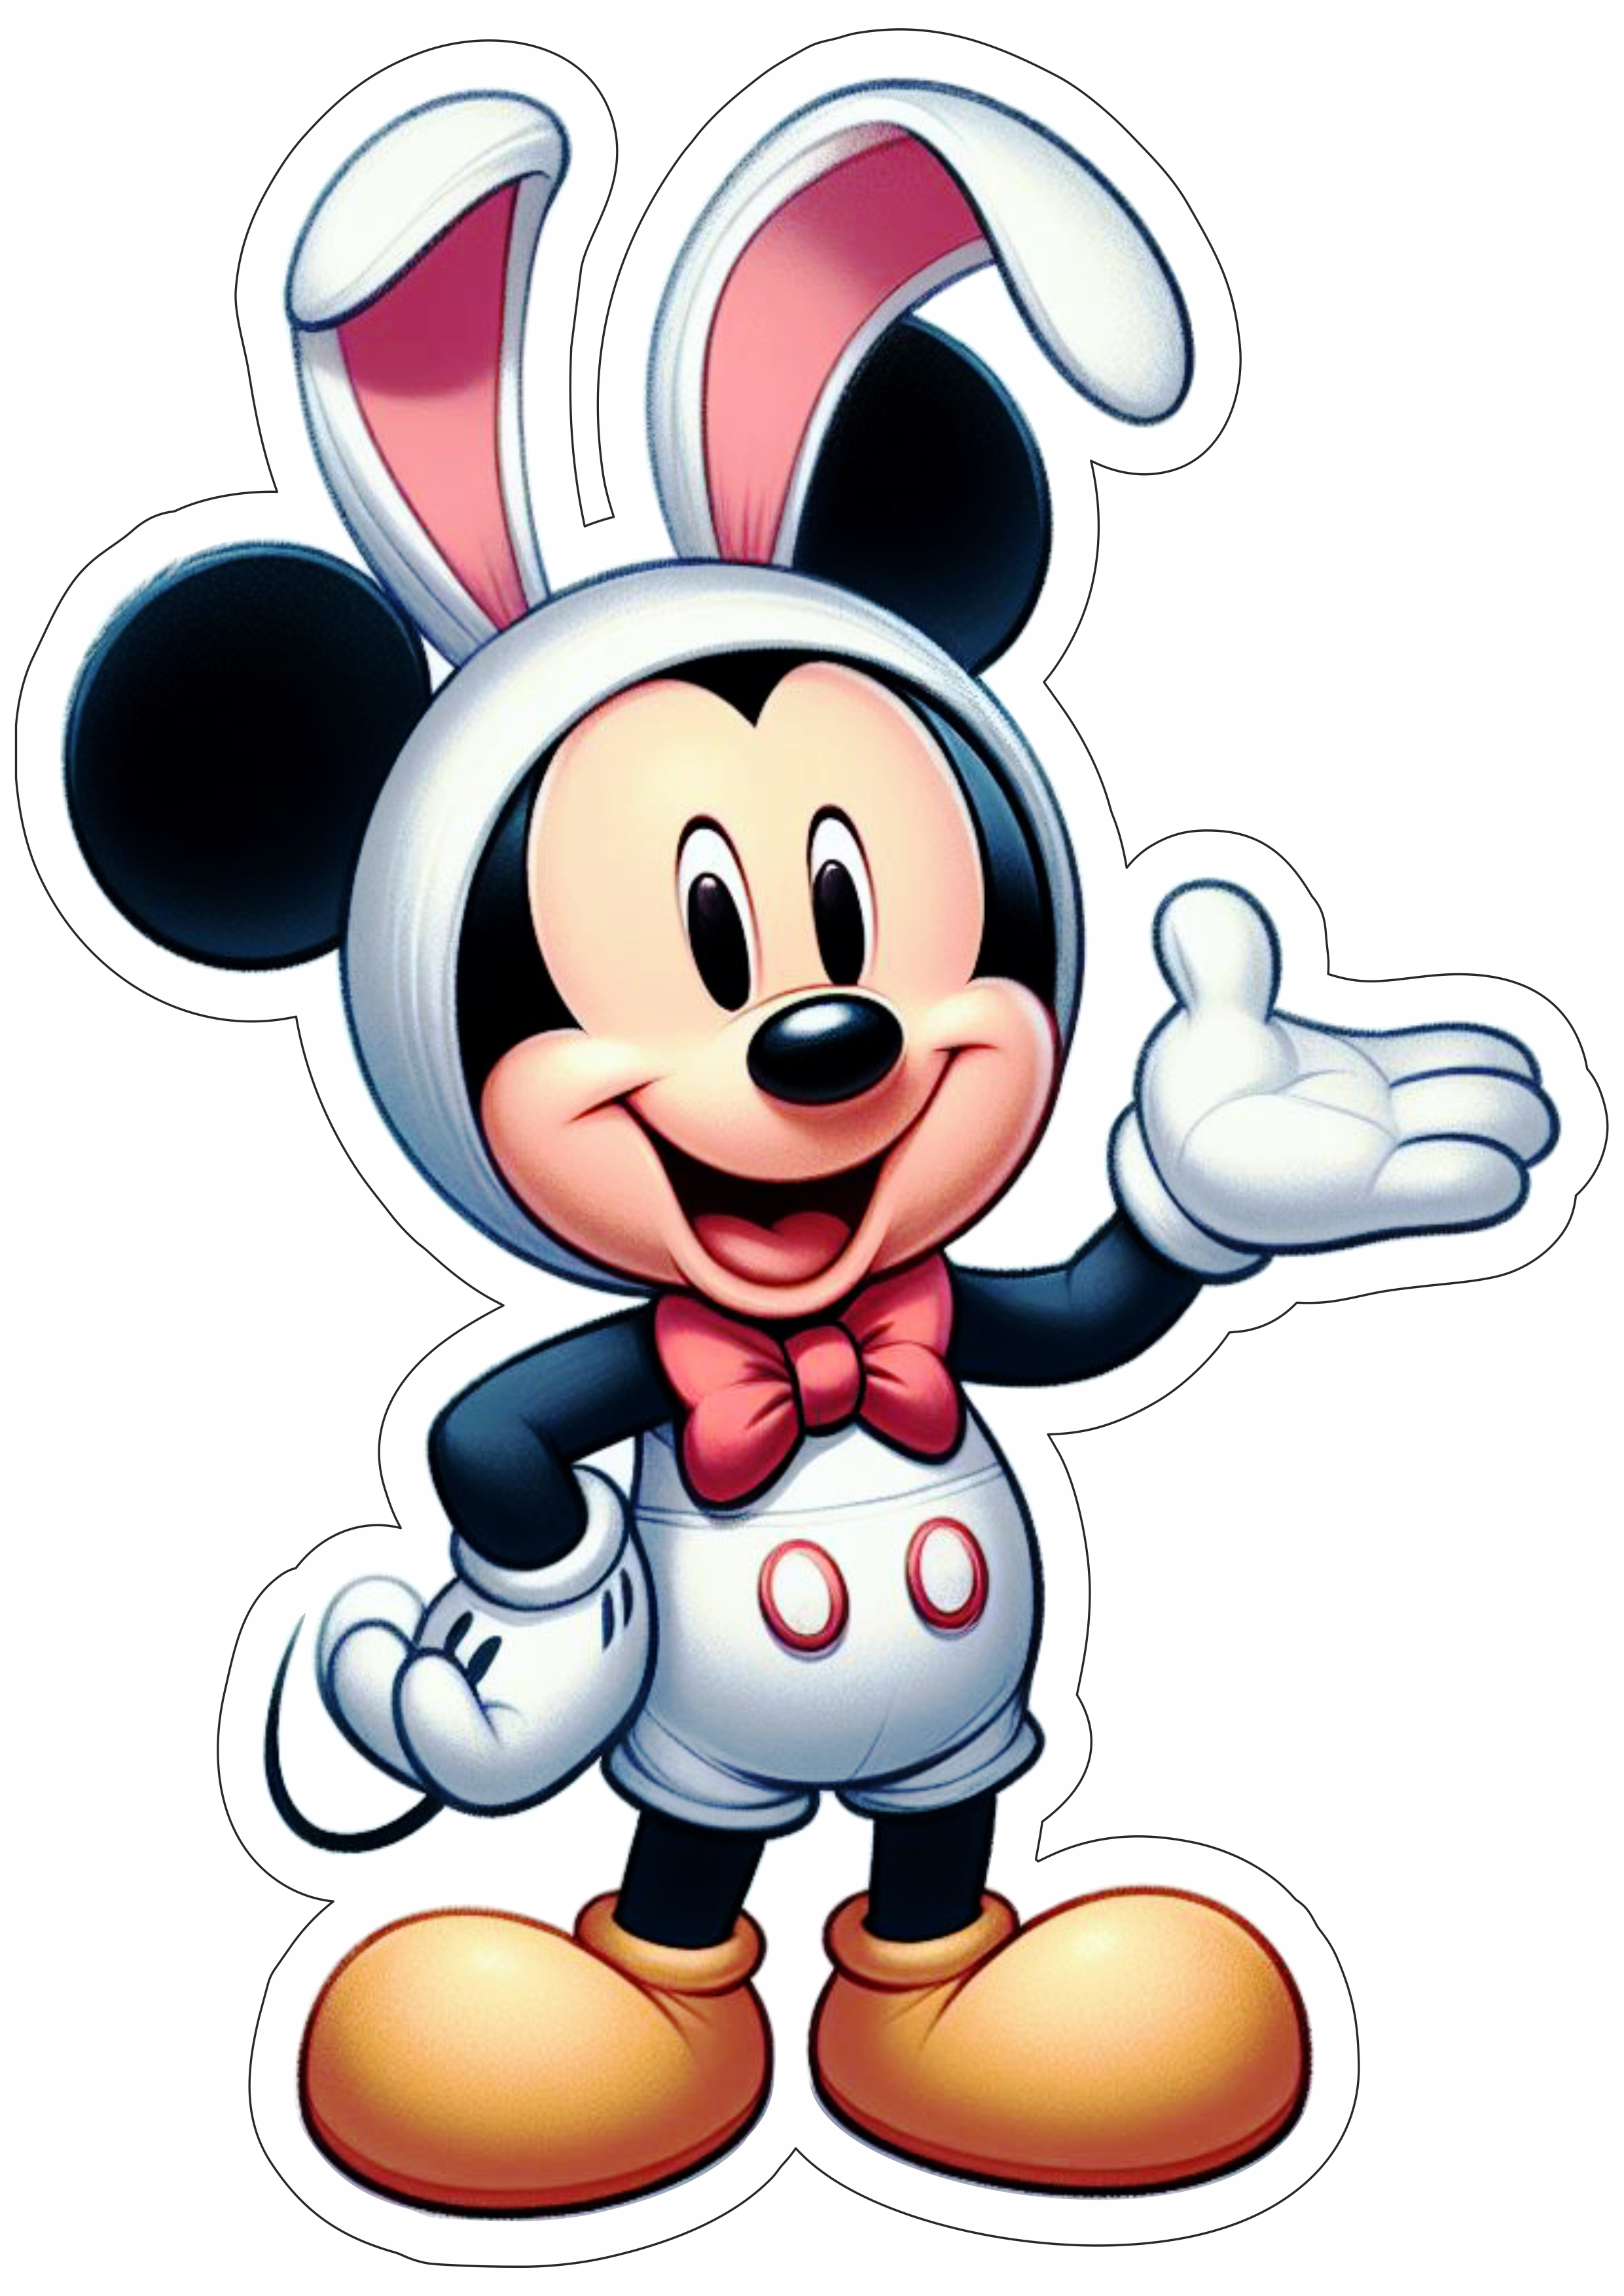 Mickey Mouse coelhinho da páscoa artes gráficas fundo transparente ilustração png